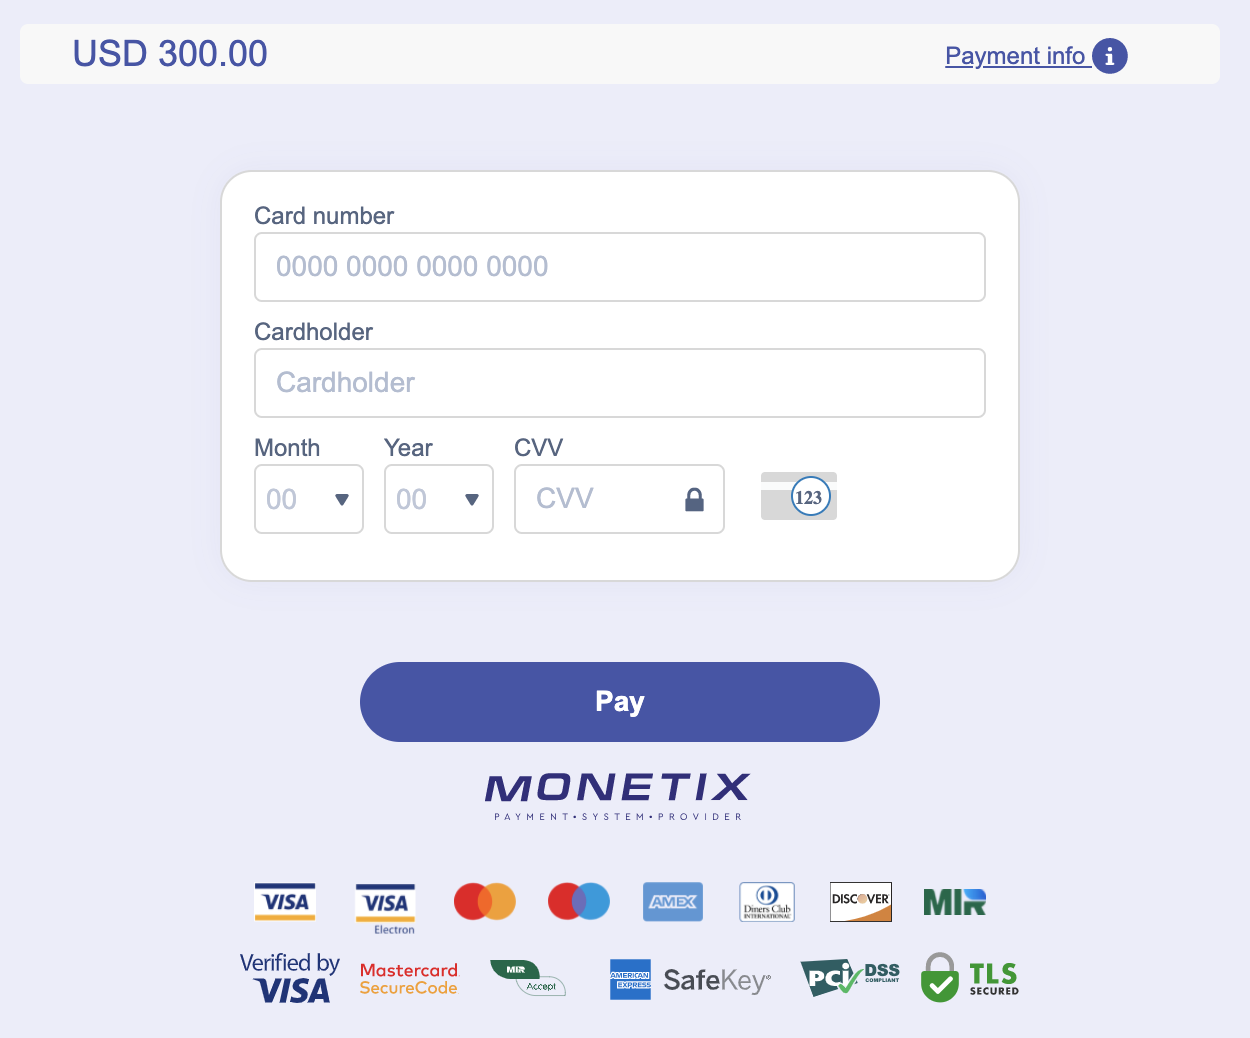 Deposite dinero en Quotex a través de tarjetas bancarias de Indonesia (Visa / MasterCard), banco (Bancos de Indonesia, BNI, Maybank, Permata Bank, Danamon, Bank Negara Indonesia, Bank Mandiri, BRI), pagos electrónicos y criptomonedas